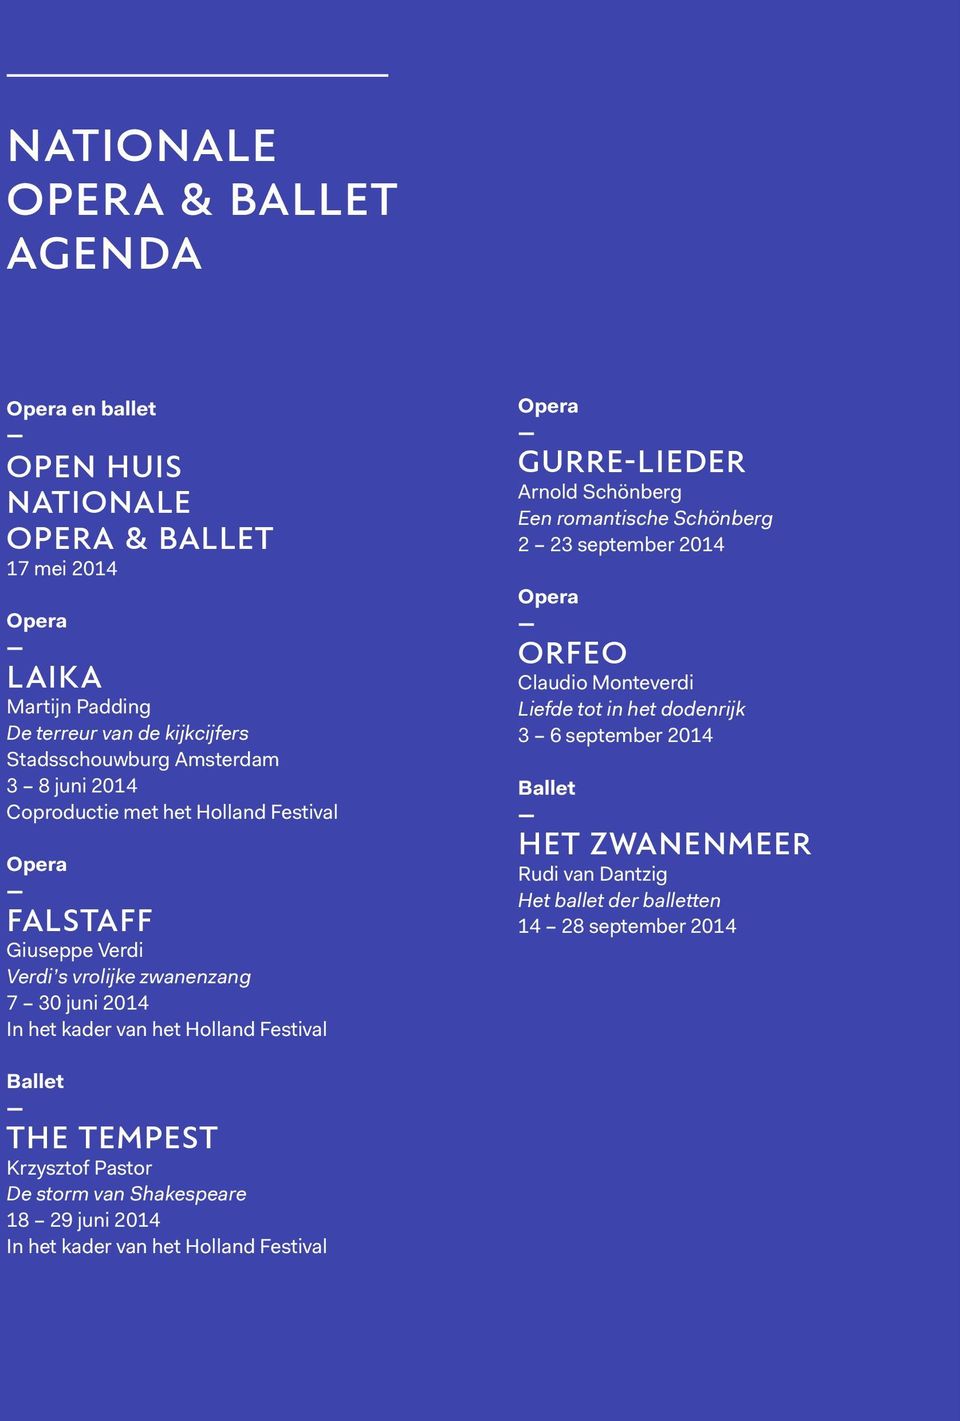 GURRE-LIEDER Arnold Schönberg Een romantische Schönberg 2 23 september 2014 Opera ORFEO Claudio Monteverdi Liefde tot in het dodenrijk 3 6 september 2014 Ballet HET